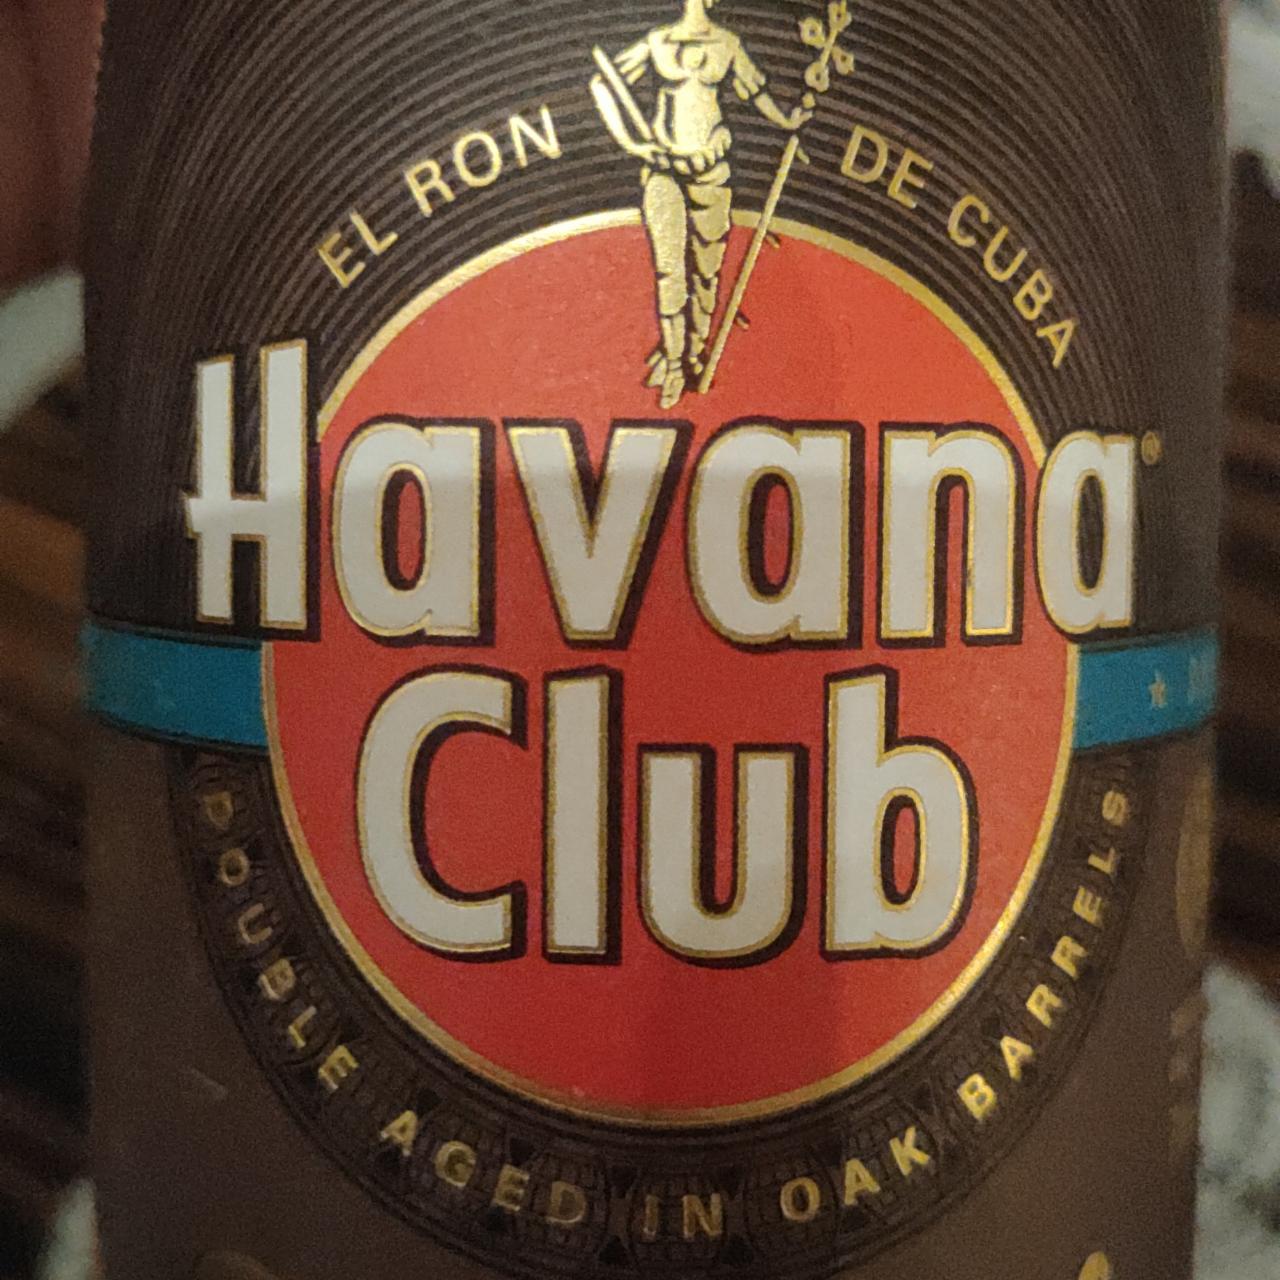 Zdjęcia - Rum Havana Club El ron de cuba